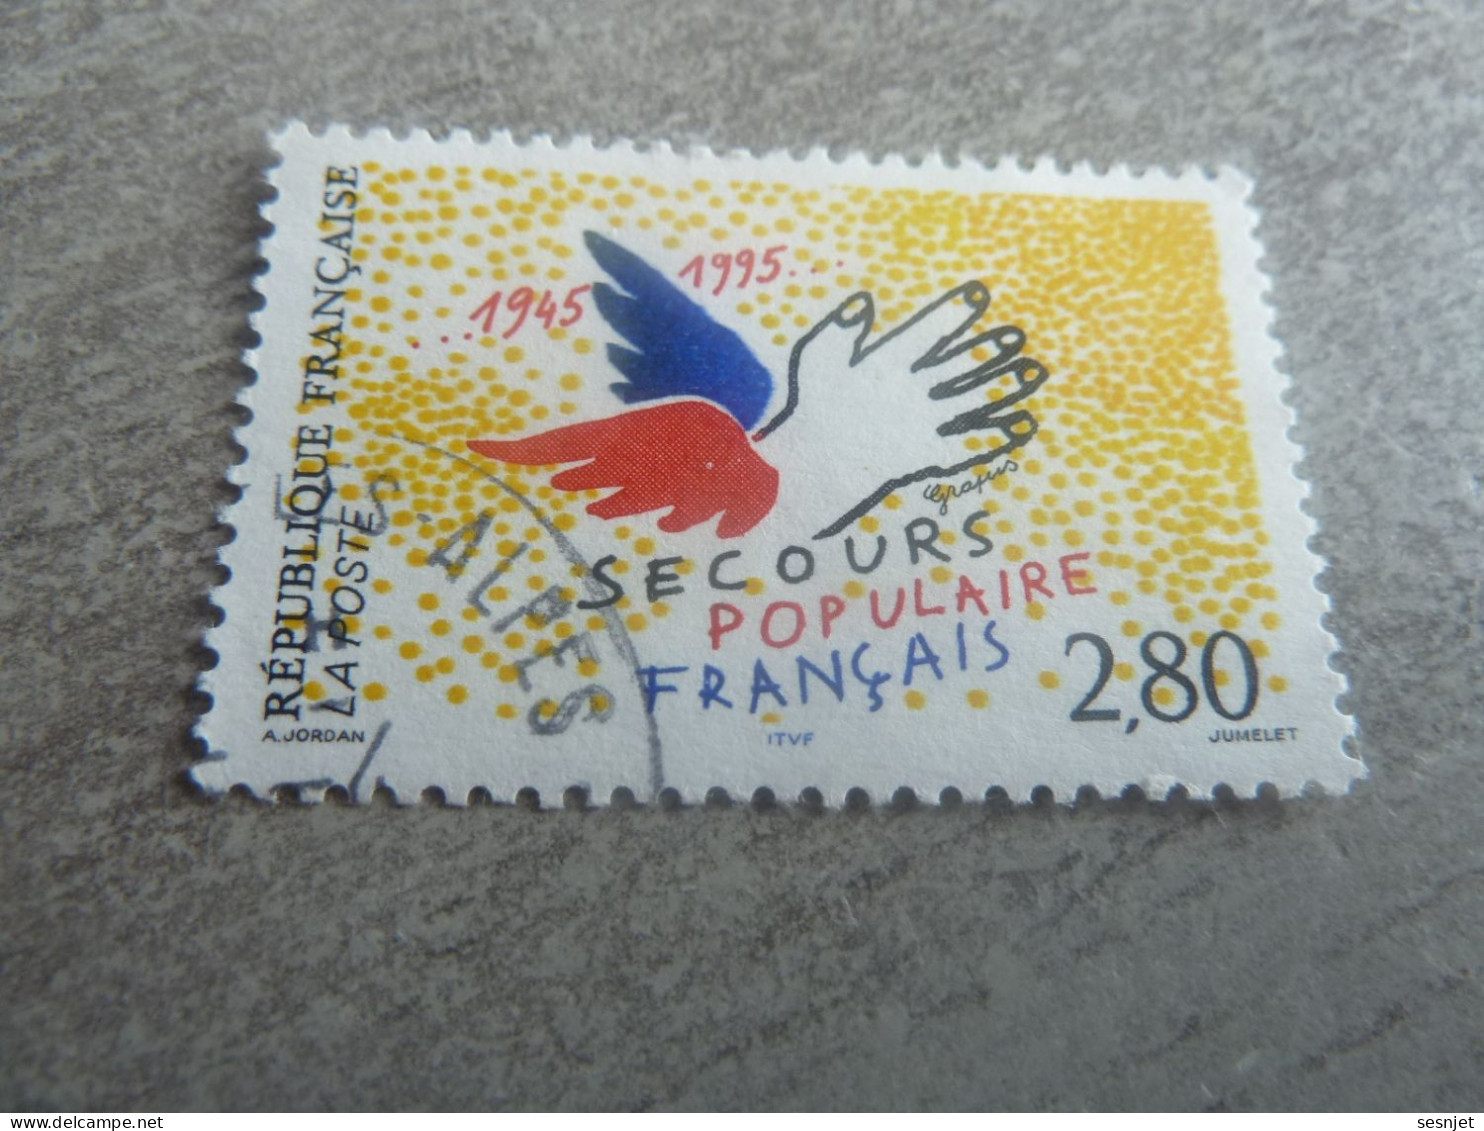 Cinquantenaire Du Secours Populaire Français - 2f.80 - Yt 2947 - Jaune, Noir, Rouge Et Bleu - Oblitéré - Année 1995 - - Usados